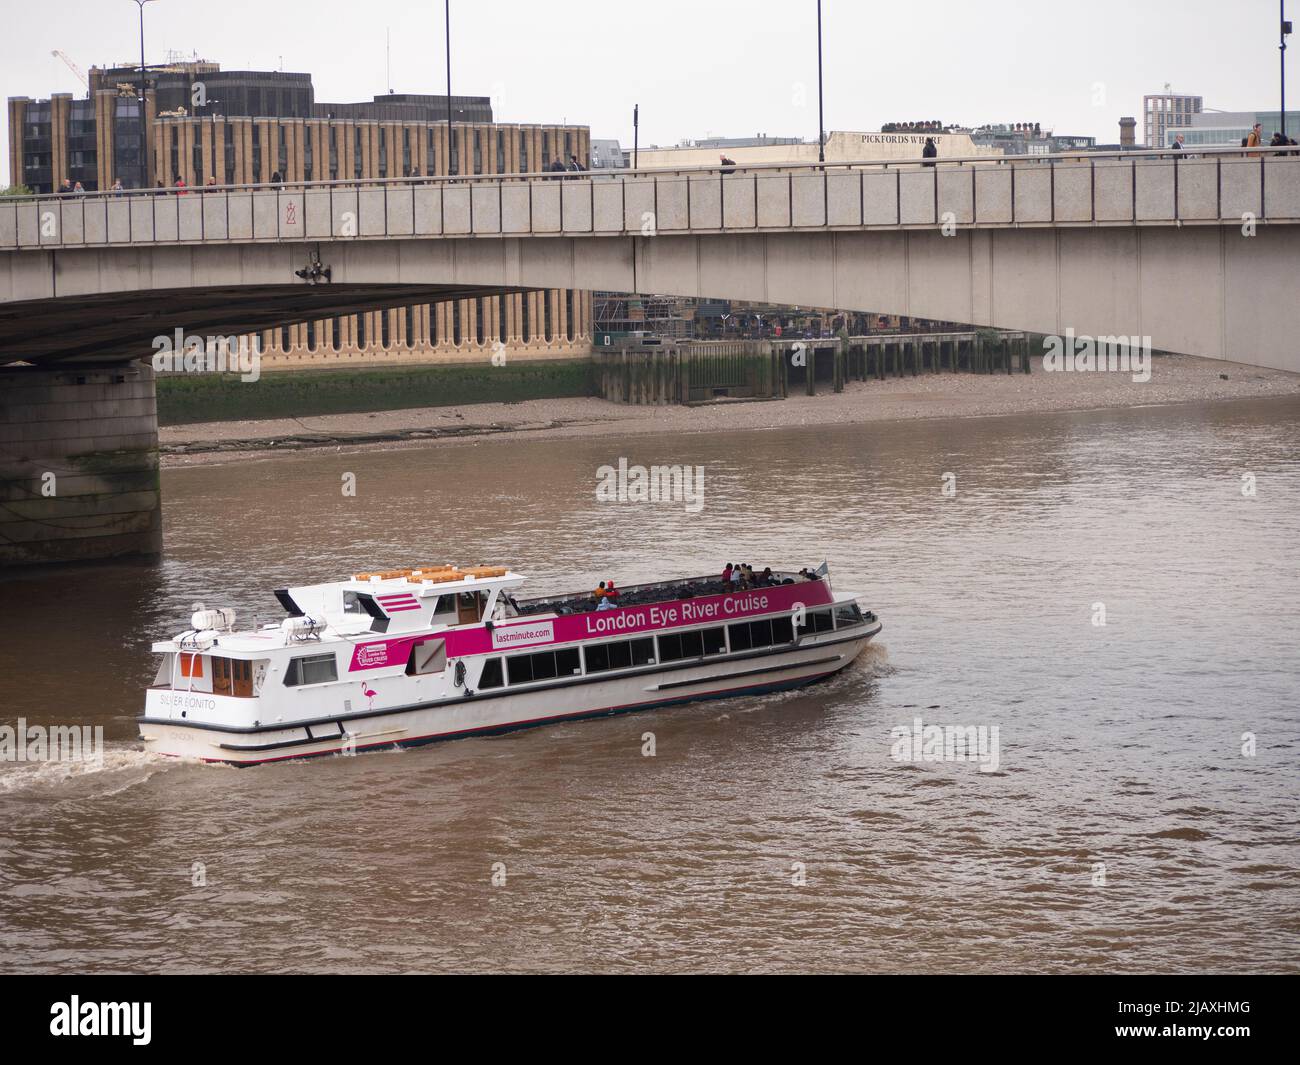 Los turistas a bordo del ferry London Eye River, Silver Bonito, recorren el río Támesis Foto de stock